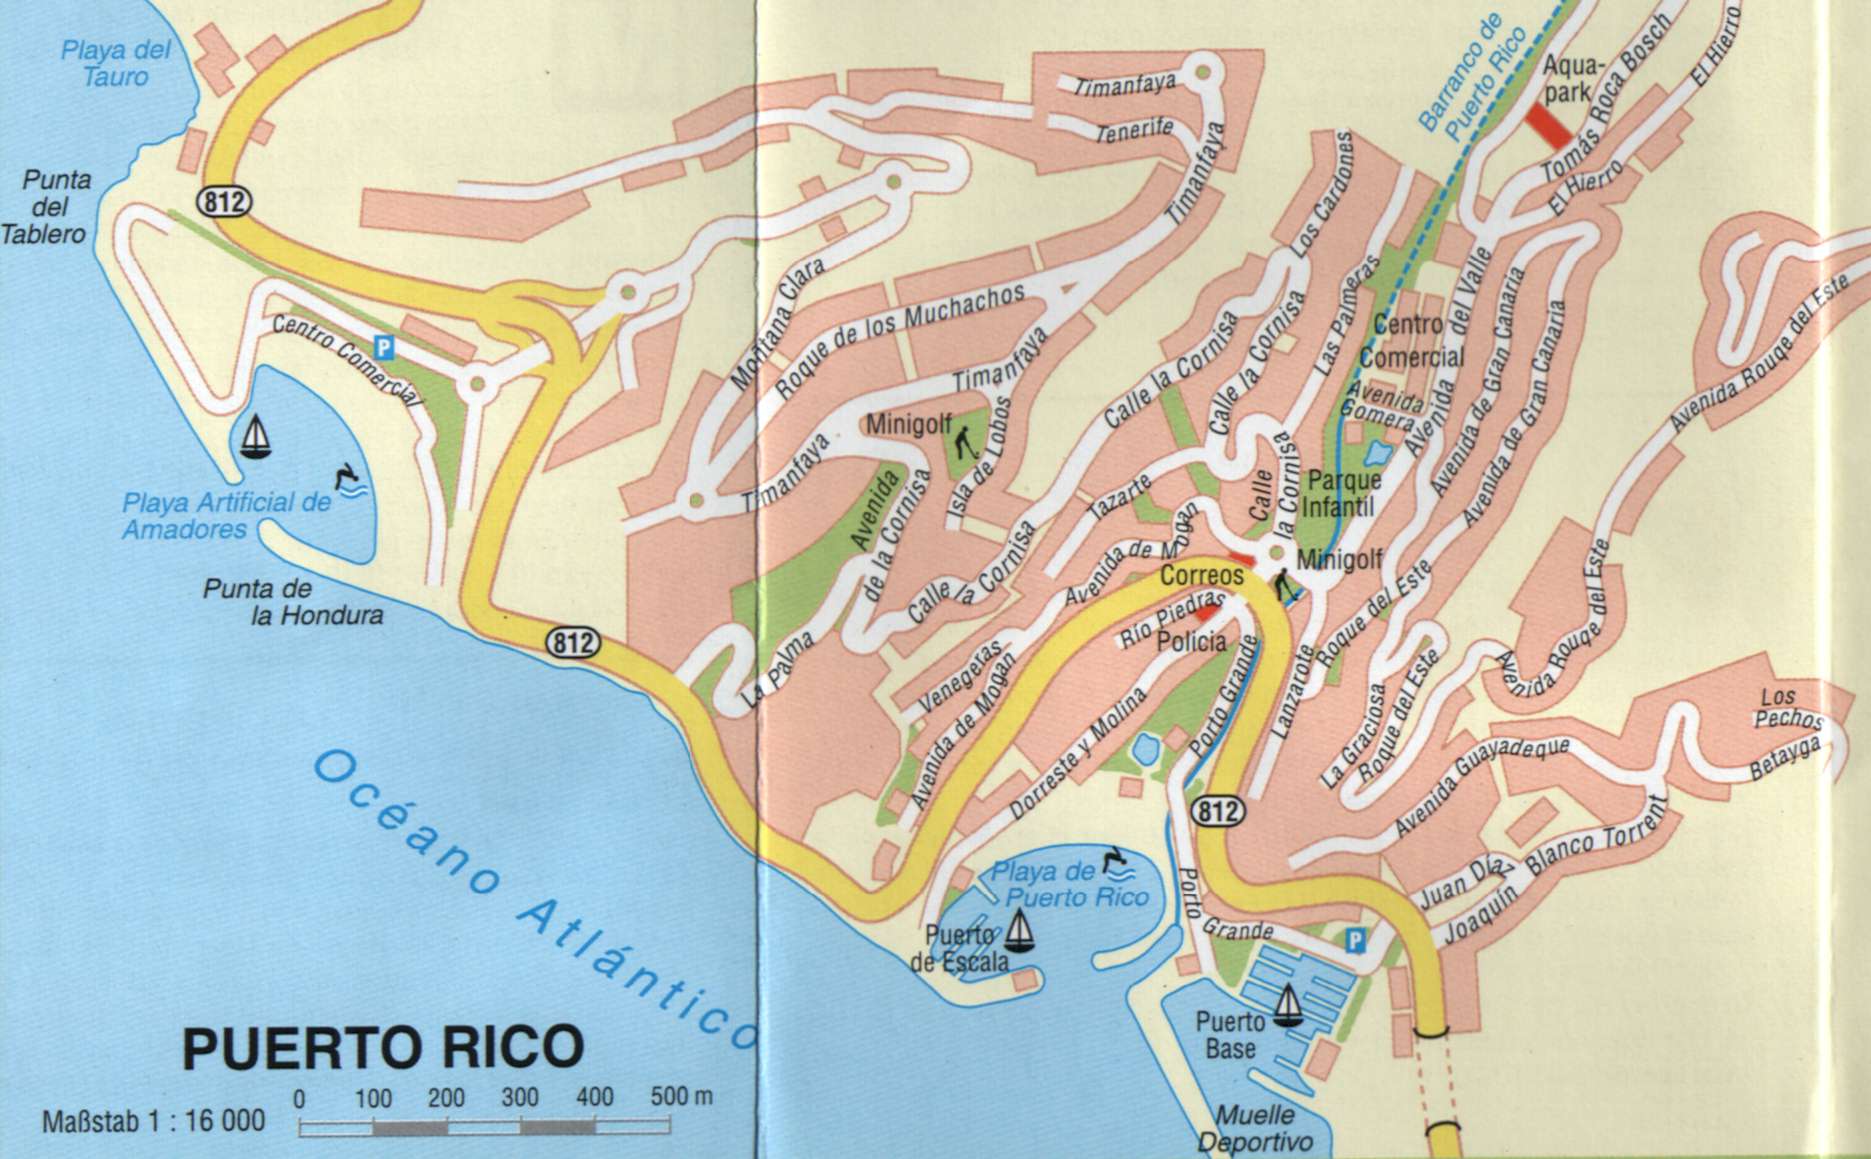 Puerto Rico Gran Canaria Map - Puerto Rico Gran Canaria • mappery